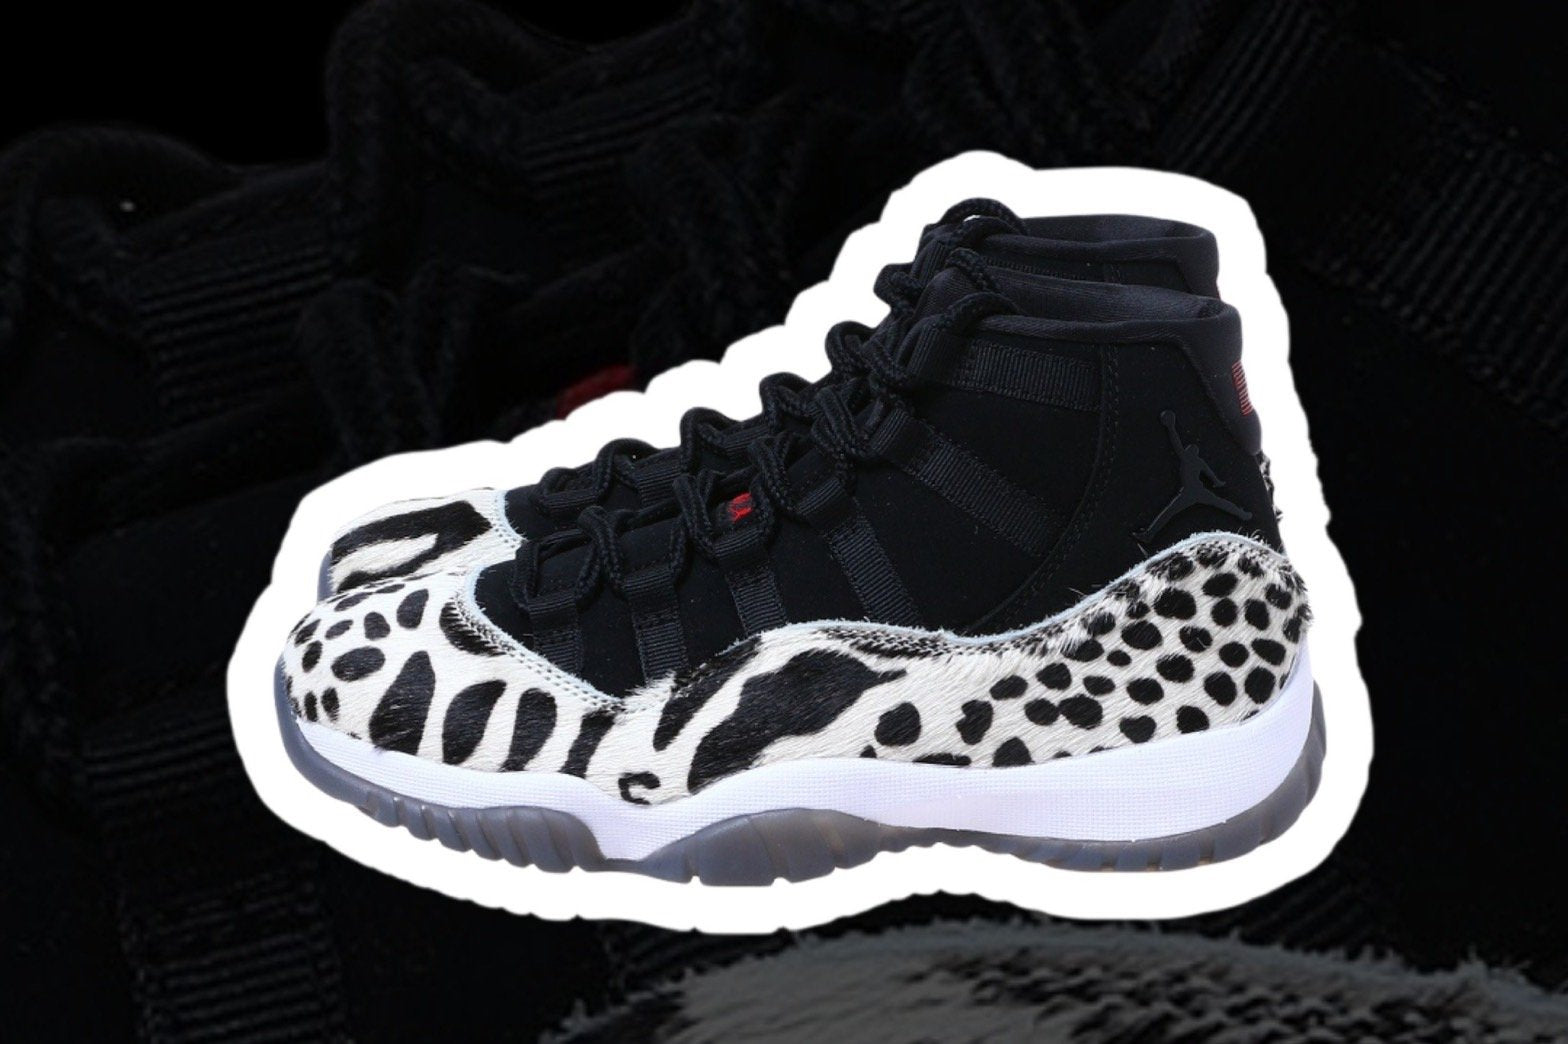 11/26(金)発売のお知らせ<br>Wmns Air Jordan 11 Retro-Forget-me-nots Online Store